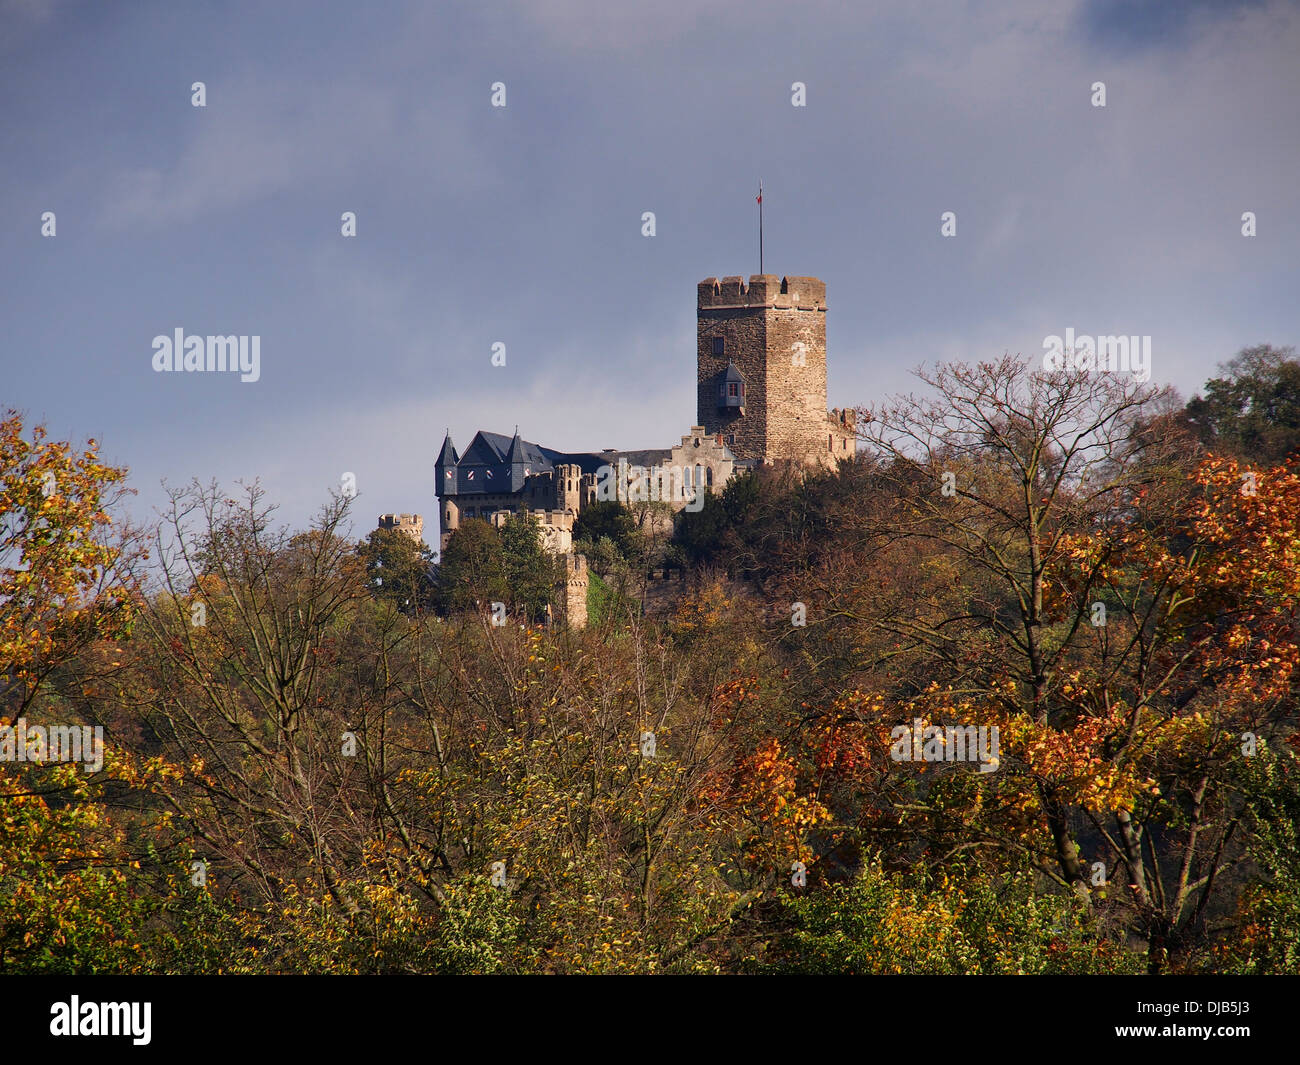 Burg in der Rhein-Tal, Deutschland Stockfoto